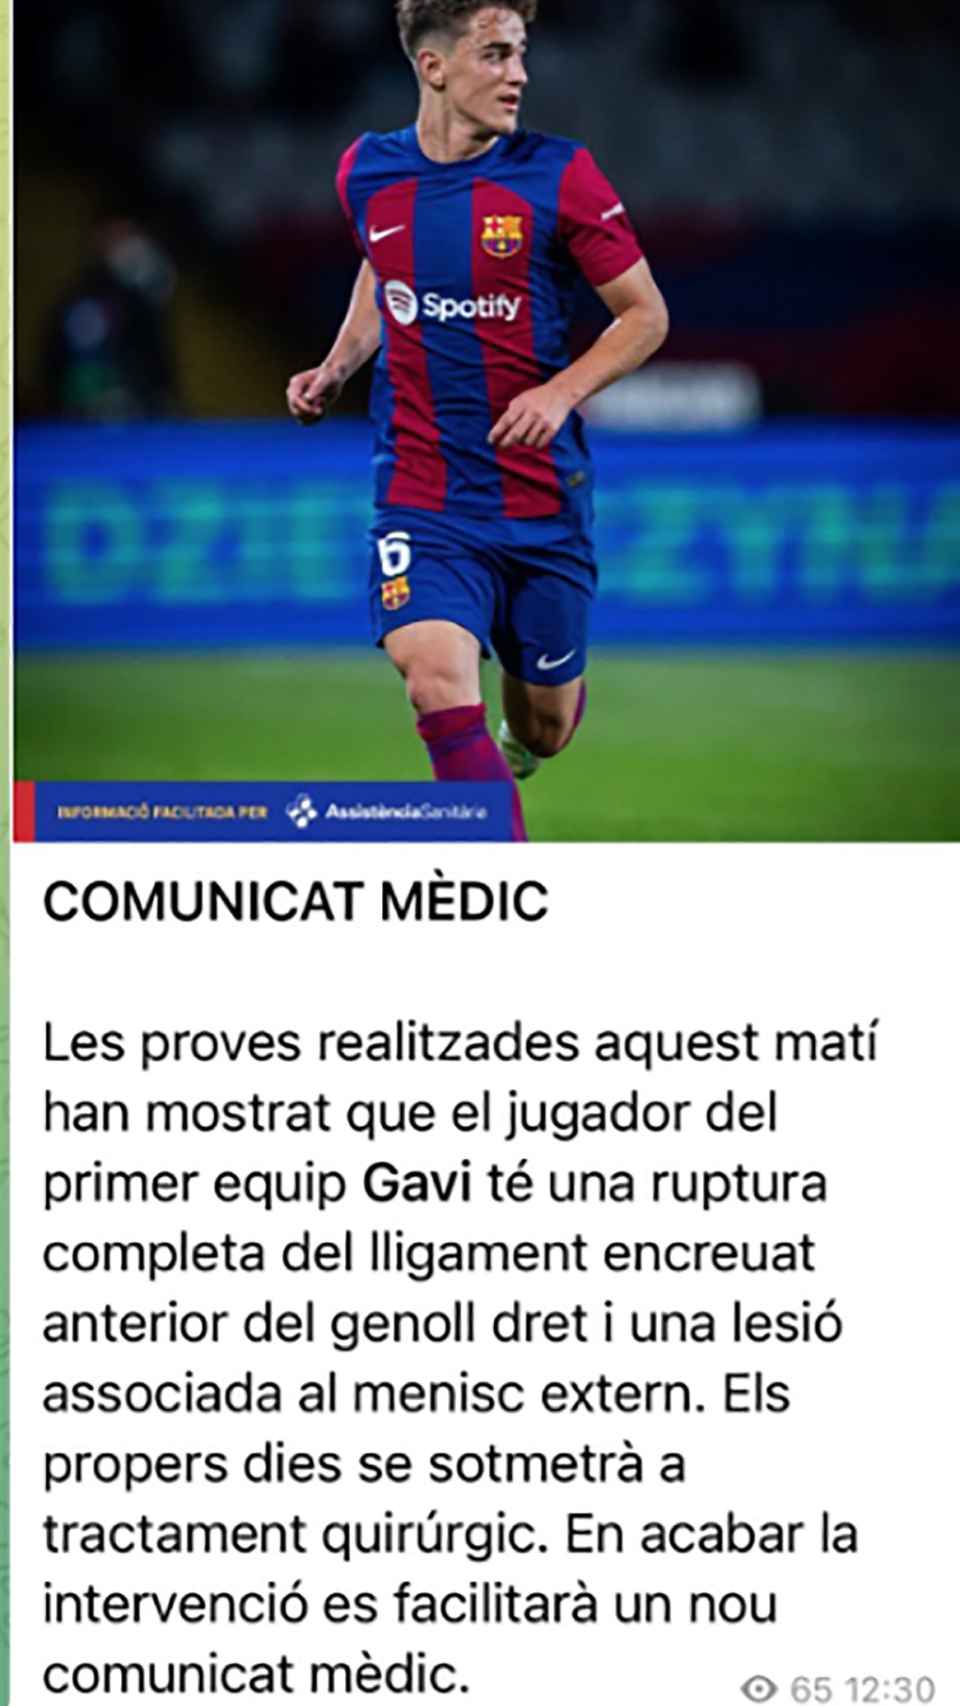 El comunicado médico del FC Barcelona sobre Gavi